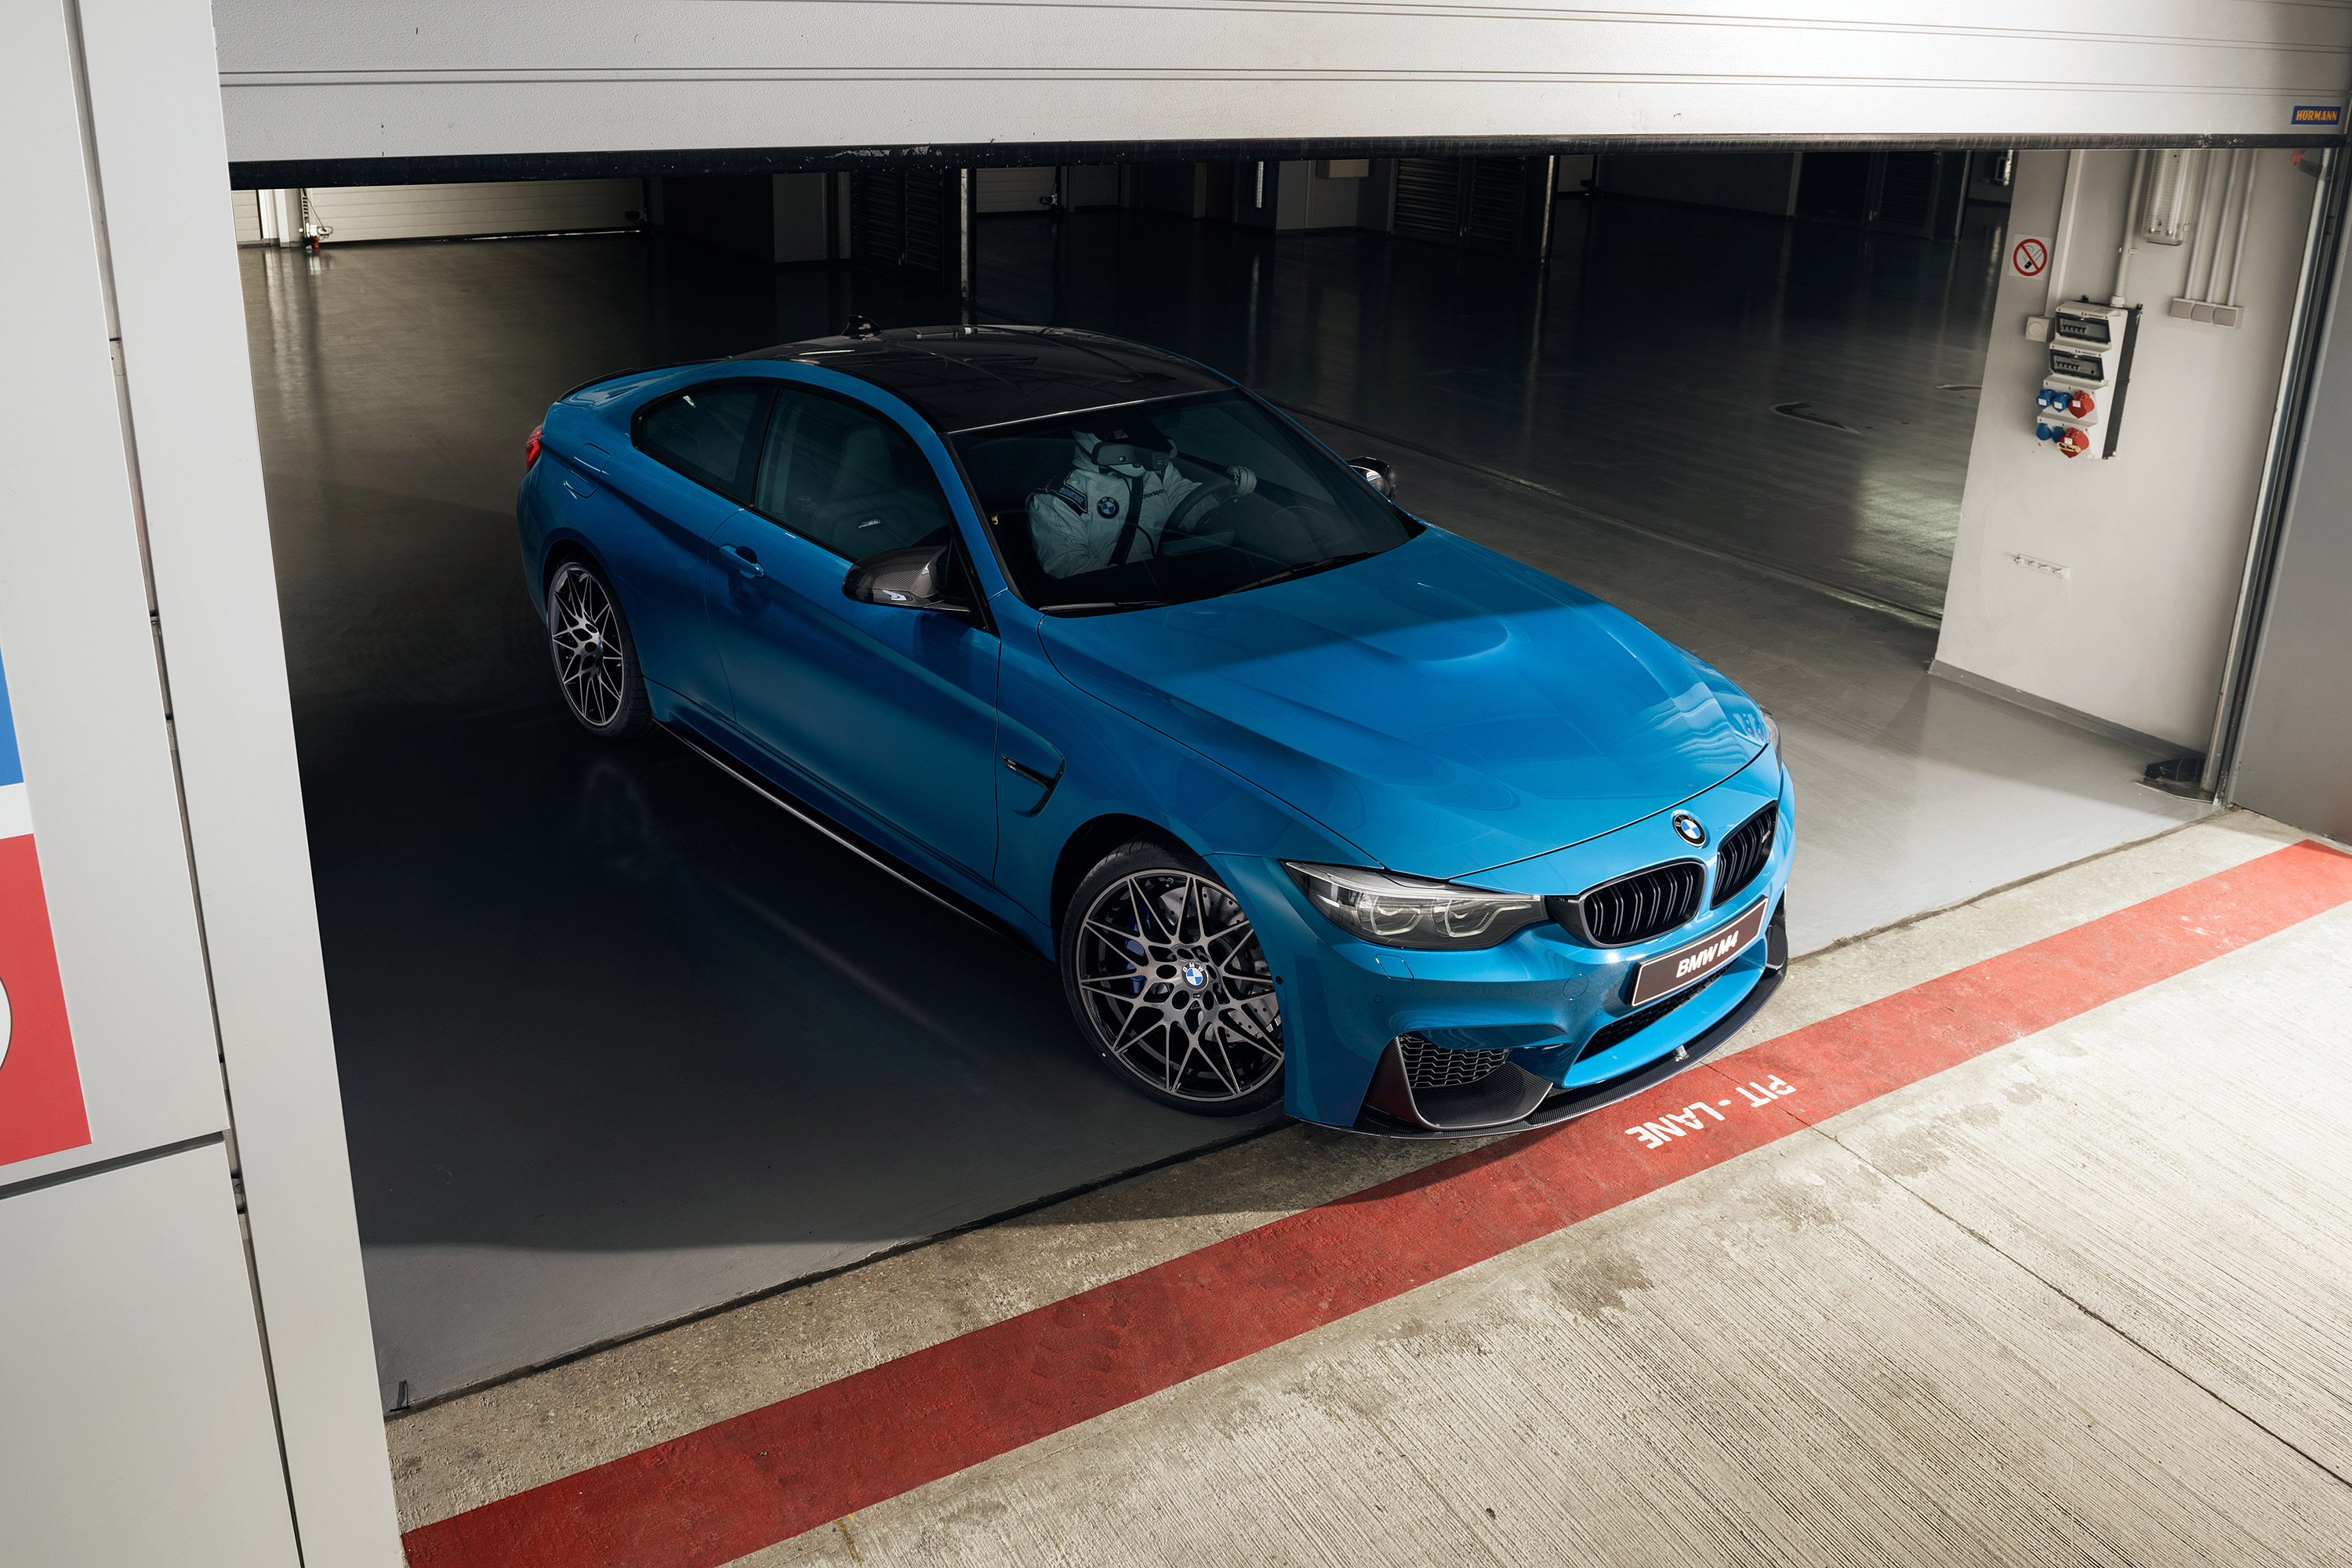  2018 BMW M4 Wallpaper.